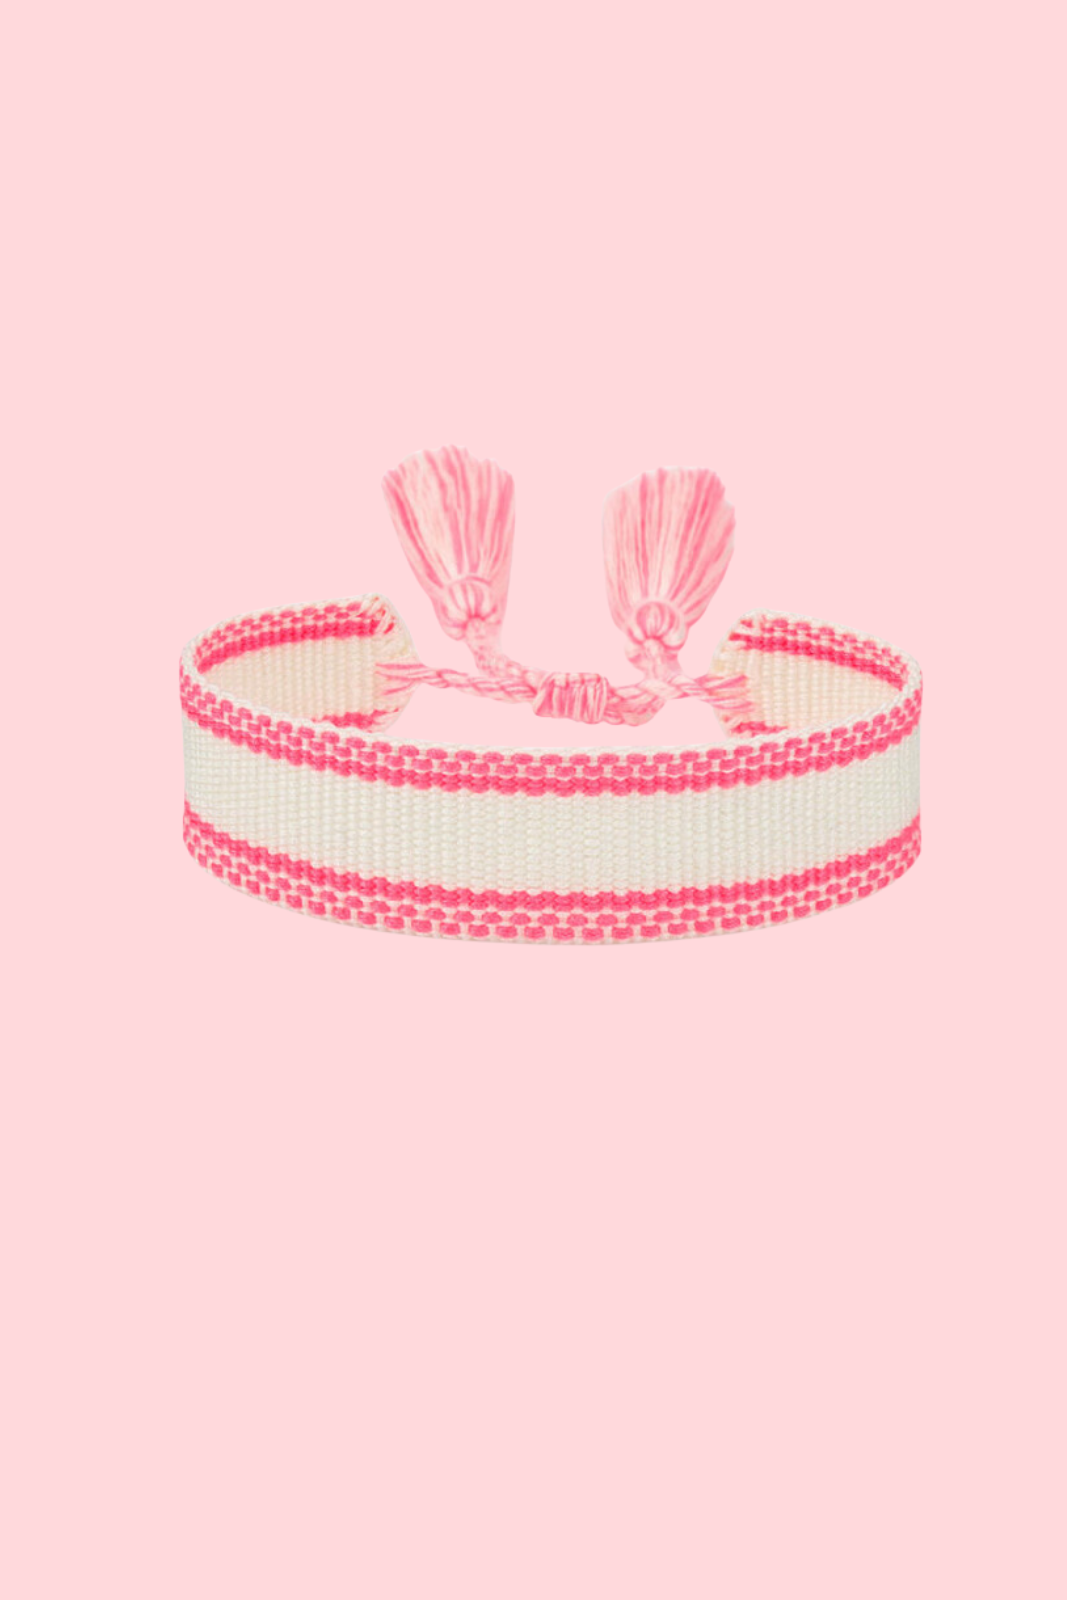 Embroidered Bracelet - Love